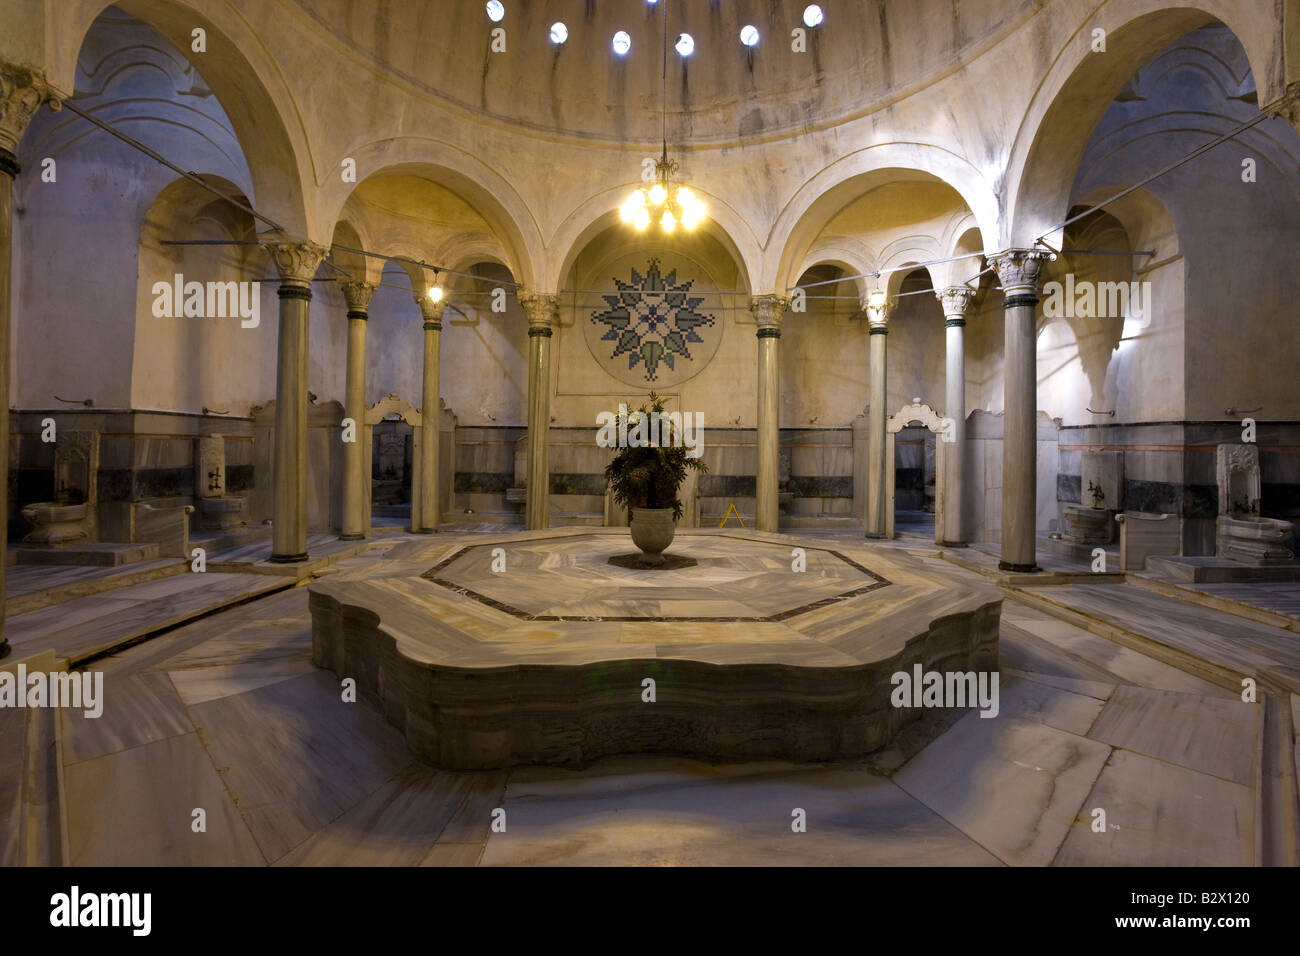 Le Hamam Cagaloglu Hammam, vue de l'intérieur de la zone de massage hammam classique sur le centre en, Istanbul Banque D'Images